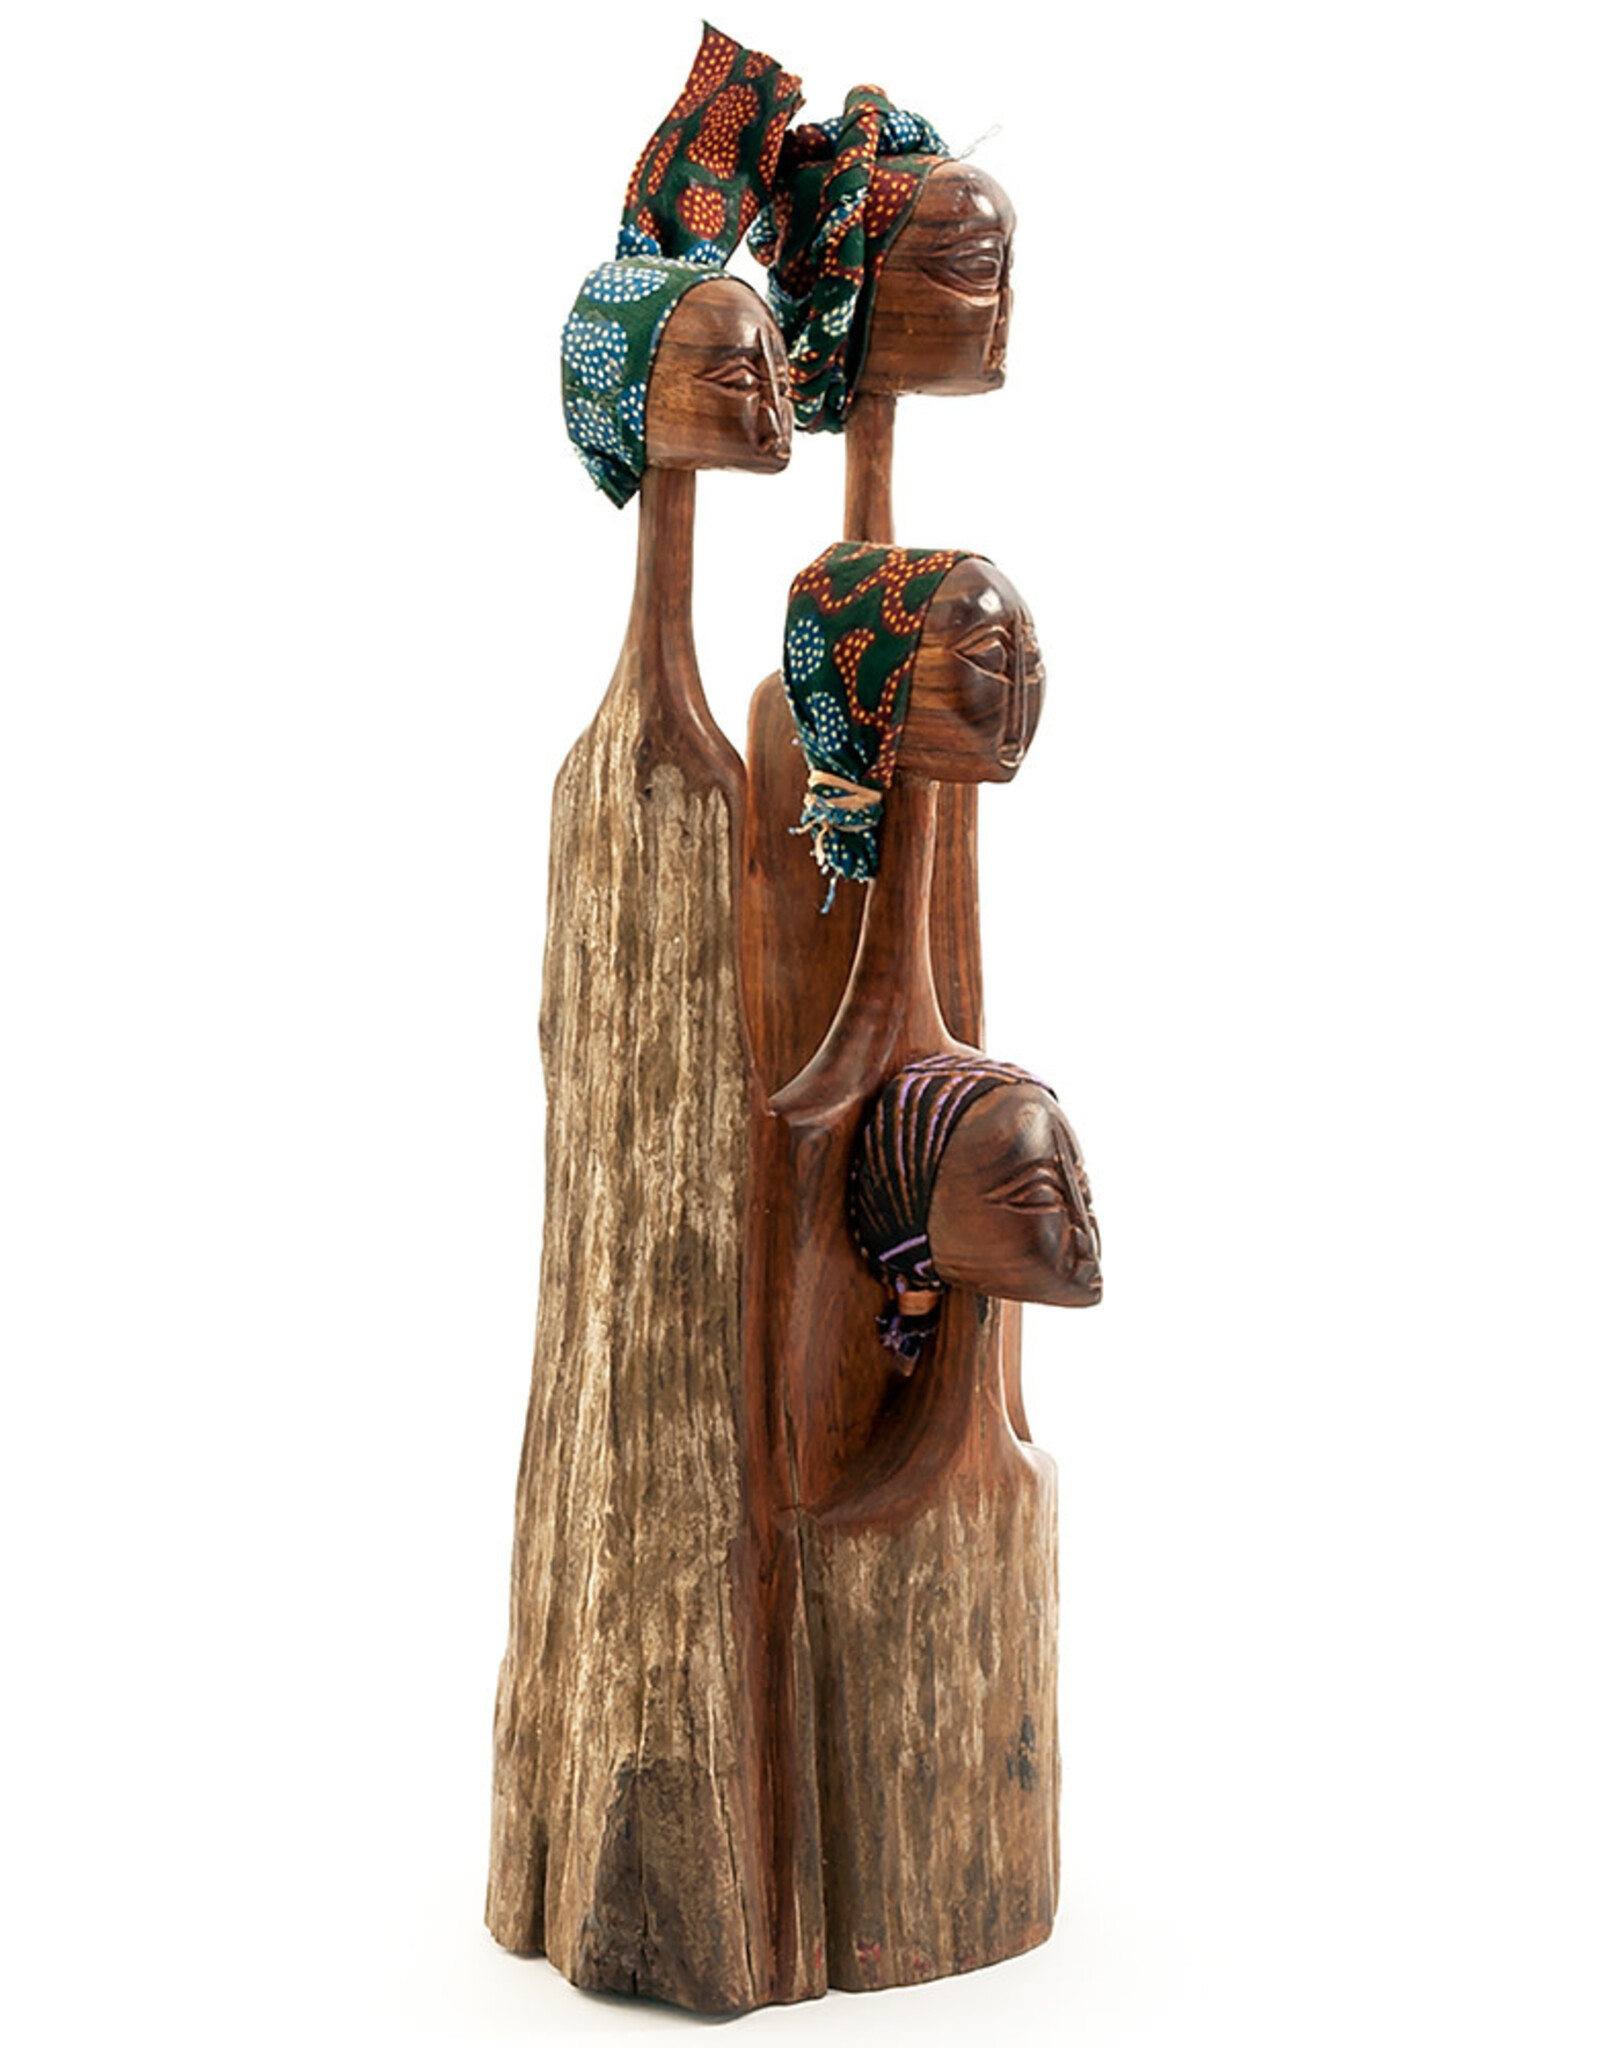 Mozambique Four Sisters Sandalwood Sculpture, Mozambique